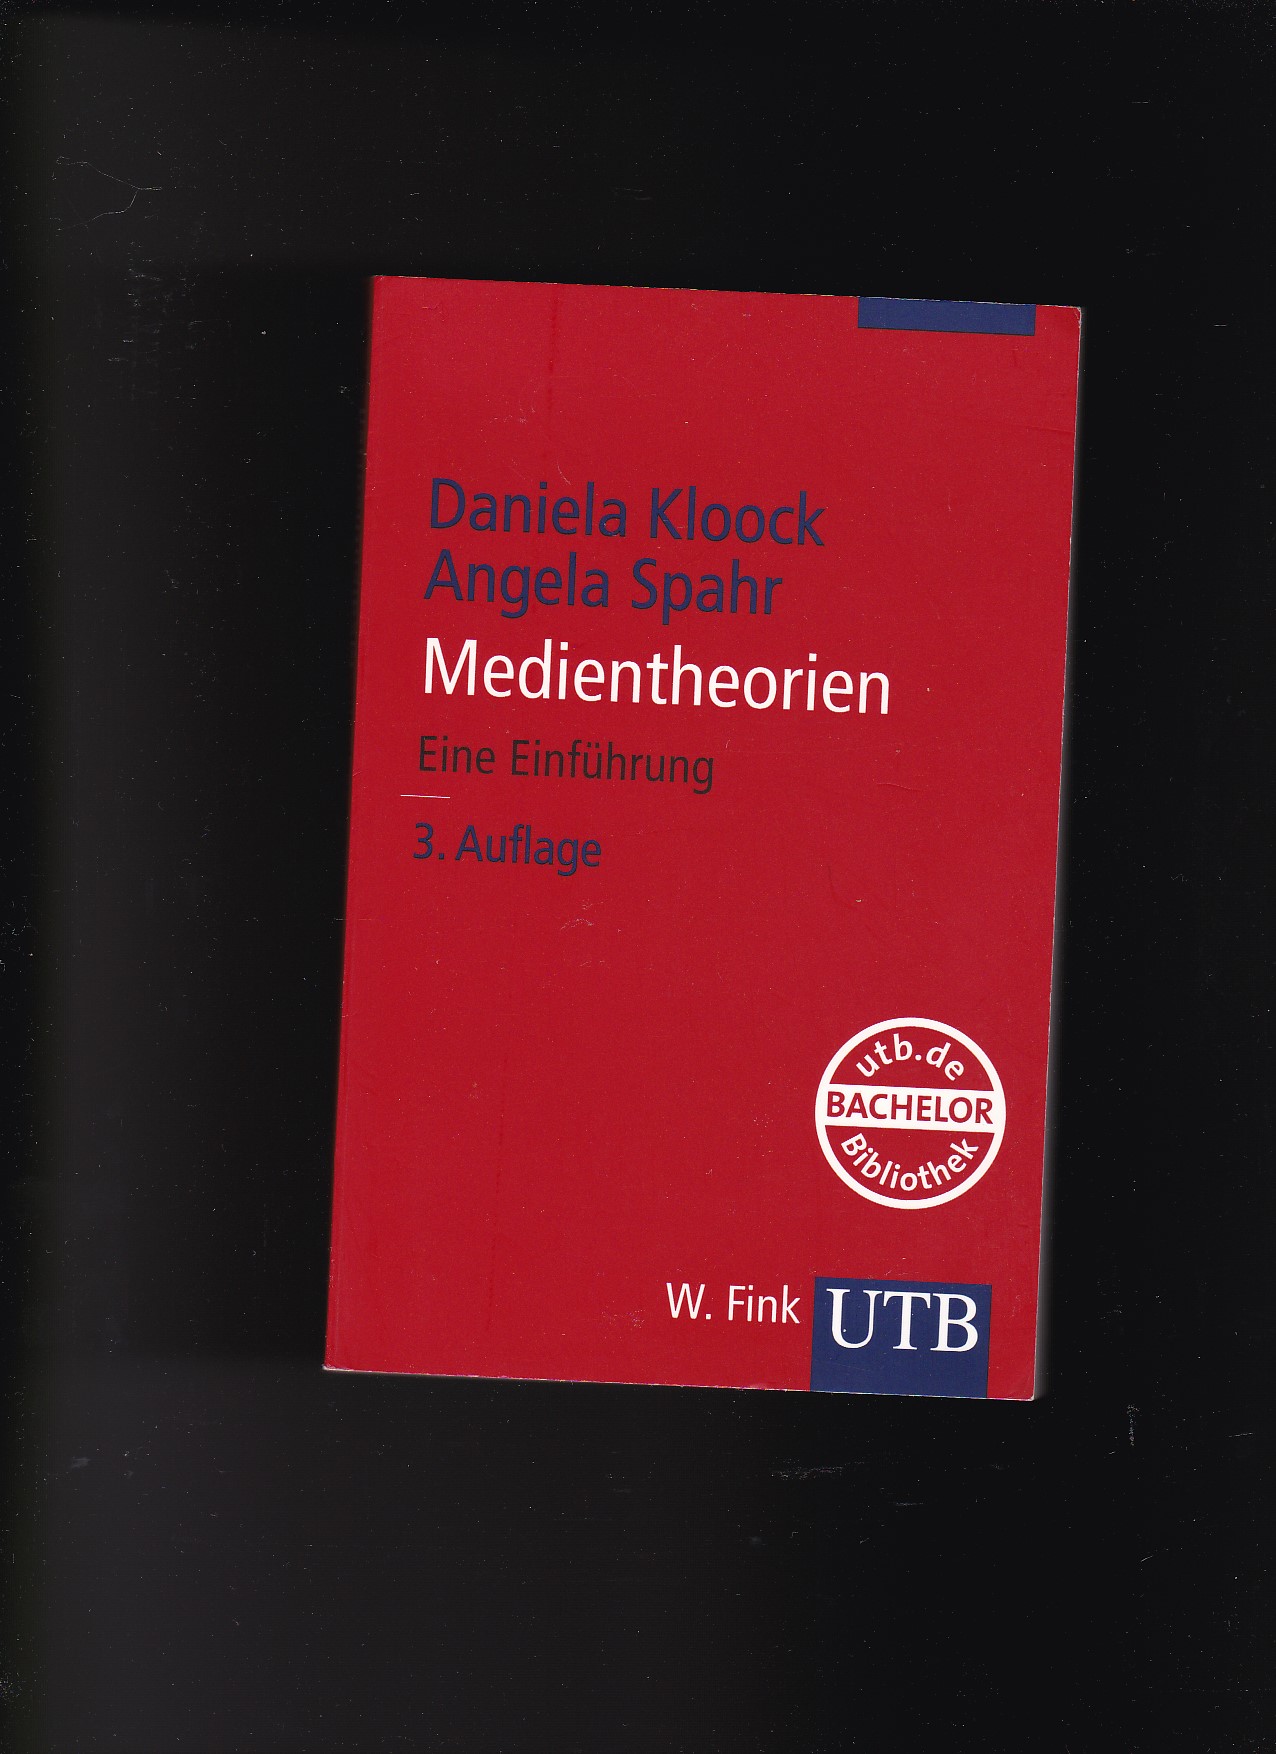 Daniela Kloock, A. Spahr, Medientheorien - eine Einführung / 3. Auflage  3. Auflage - Kloock, Daniela (Mitwirkender) und Angela (Mitwirkender) Spahr